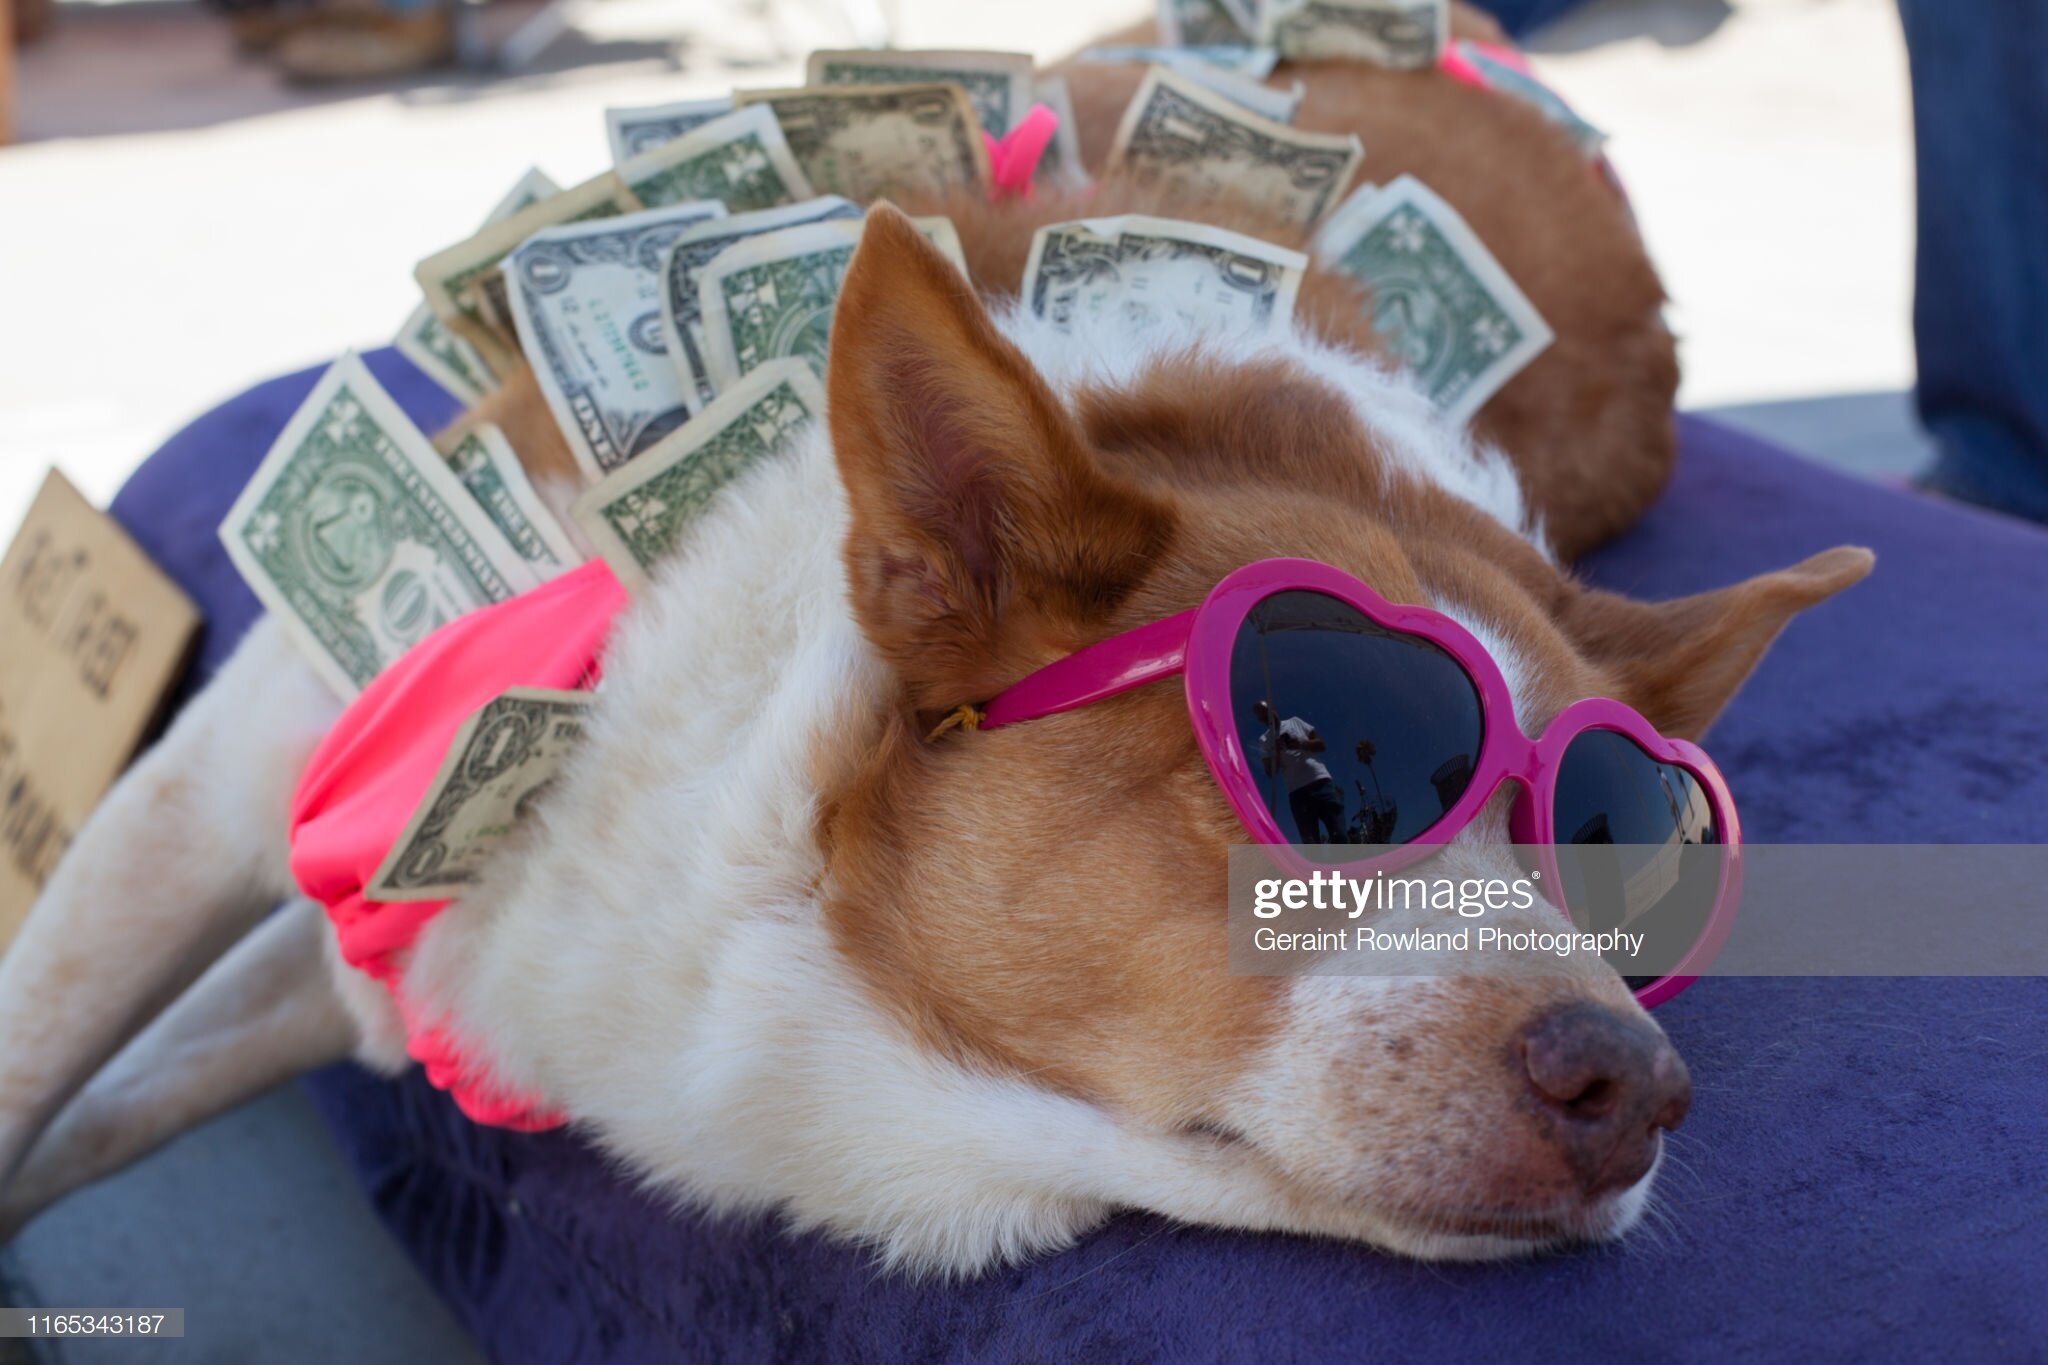 Dog &amp; Dollar Bills in California.